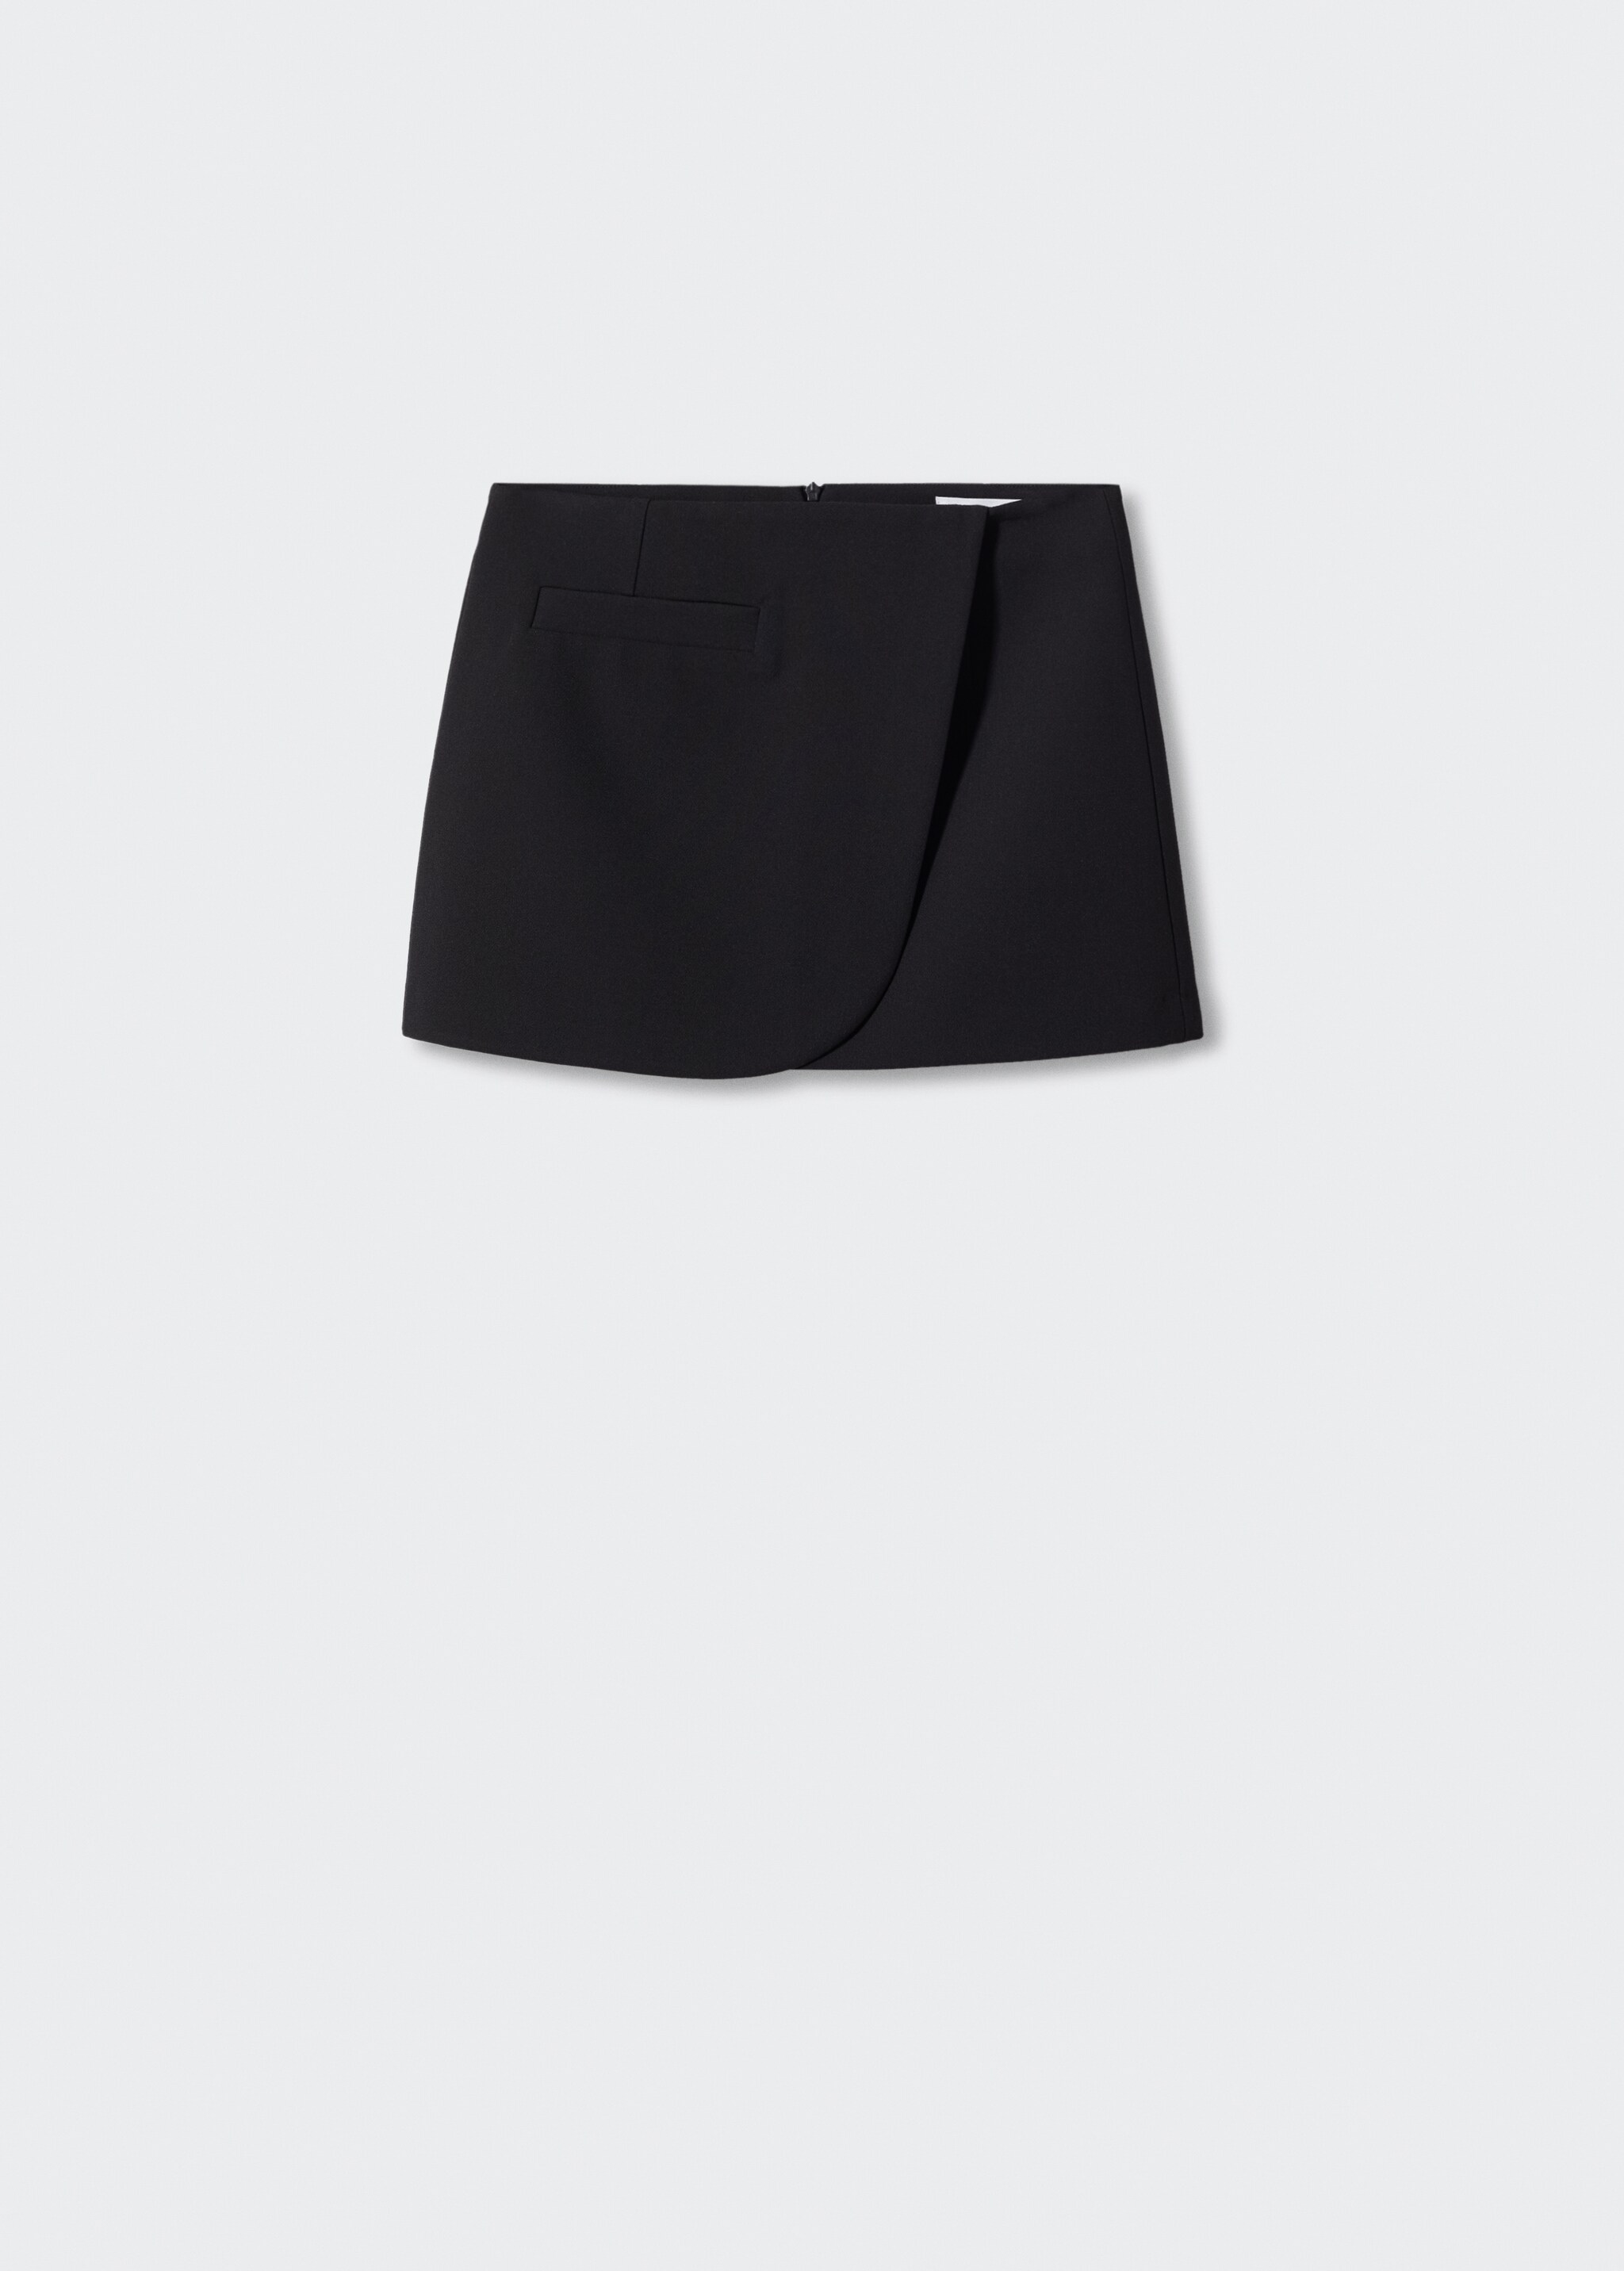 Minifalda cruzada - Artículo sin modelo